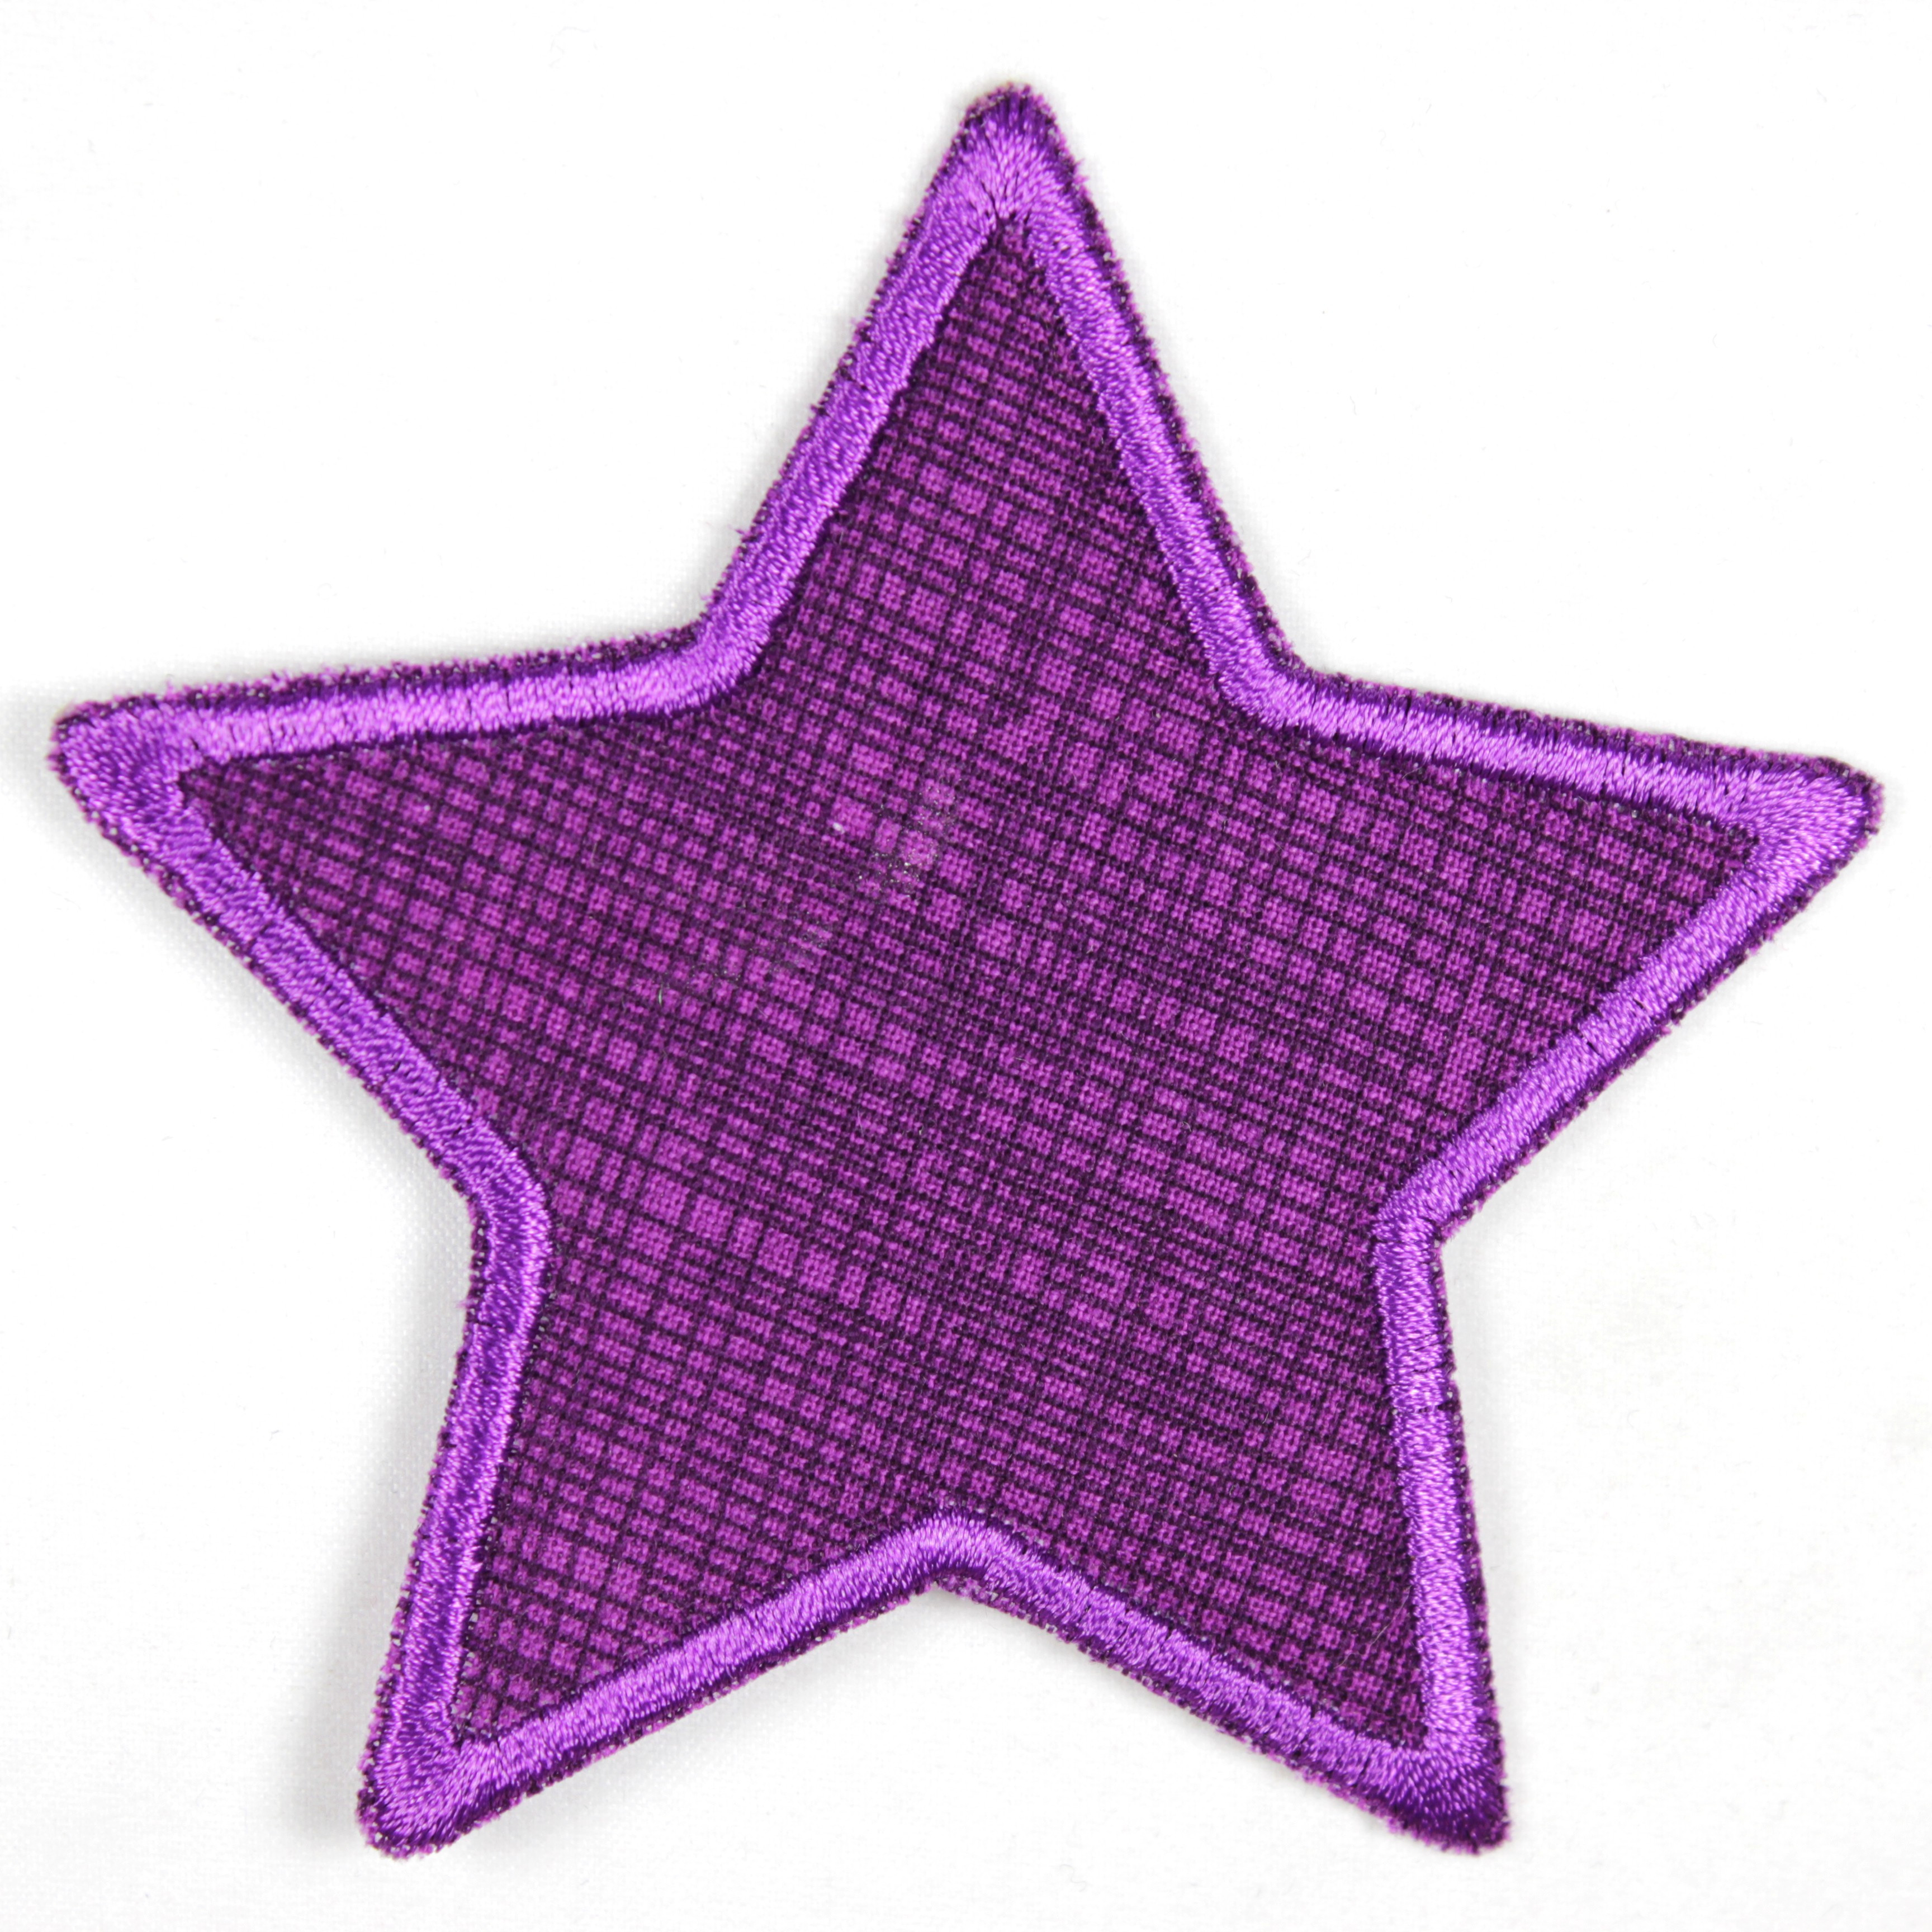 Knieflicken Stern violet Bügelflicken lila Aufbügler für Kinder gestreift karierter Flicken zum aufbügeln